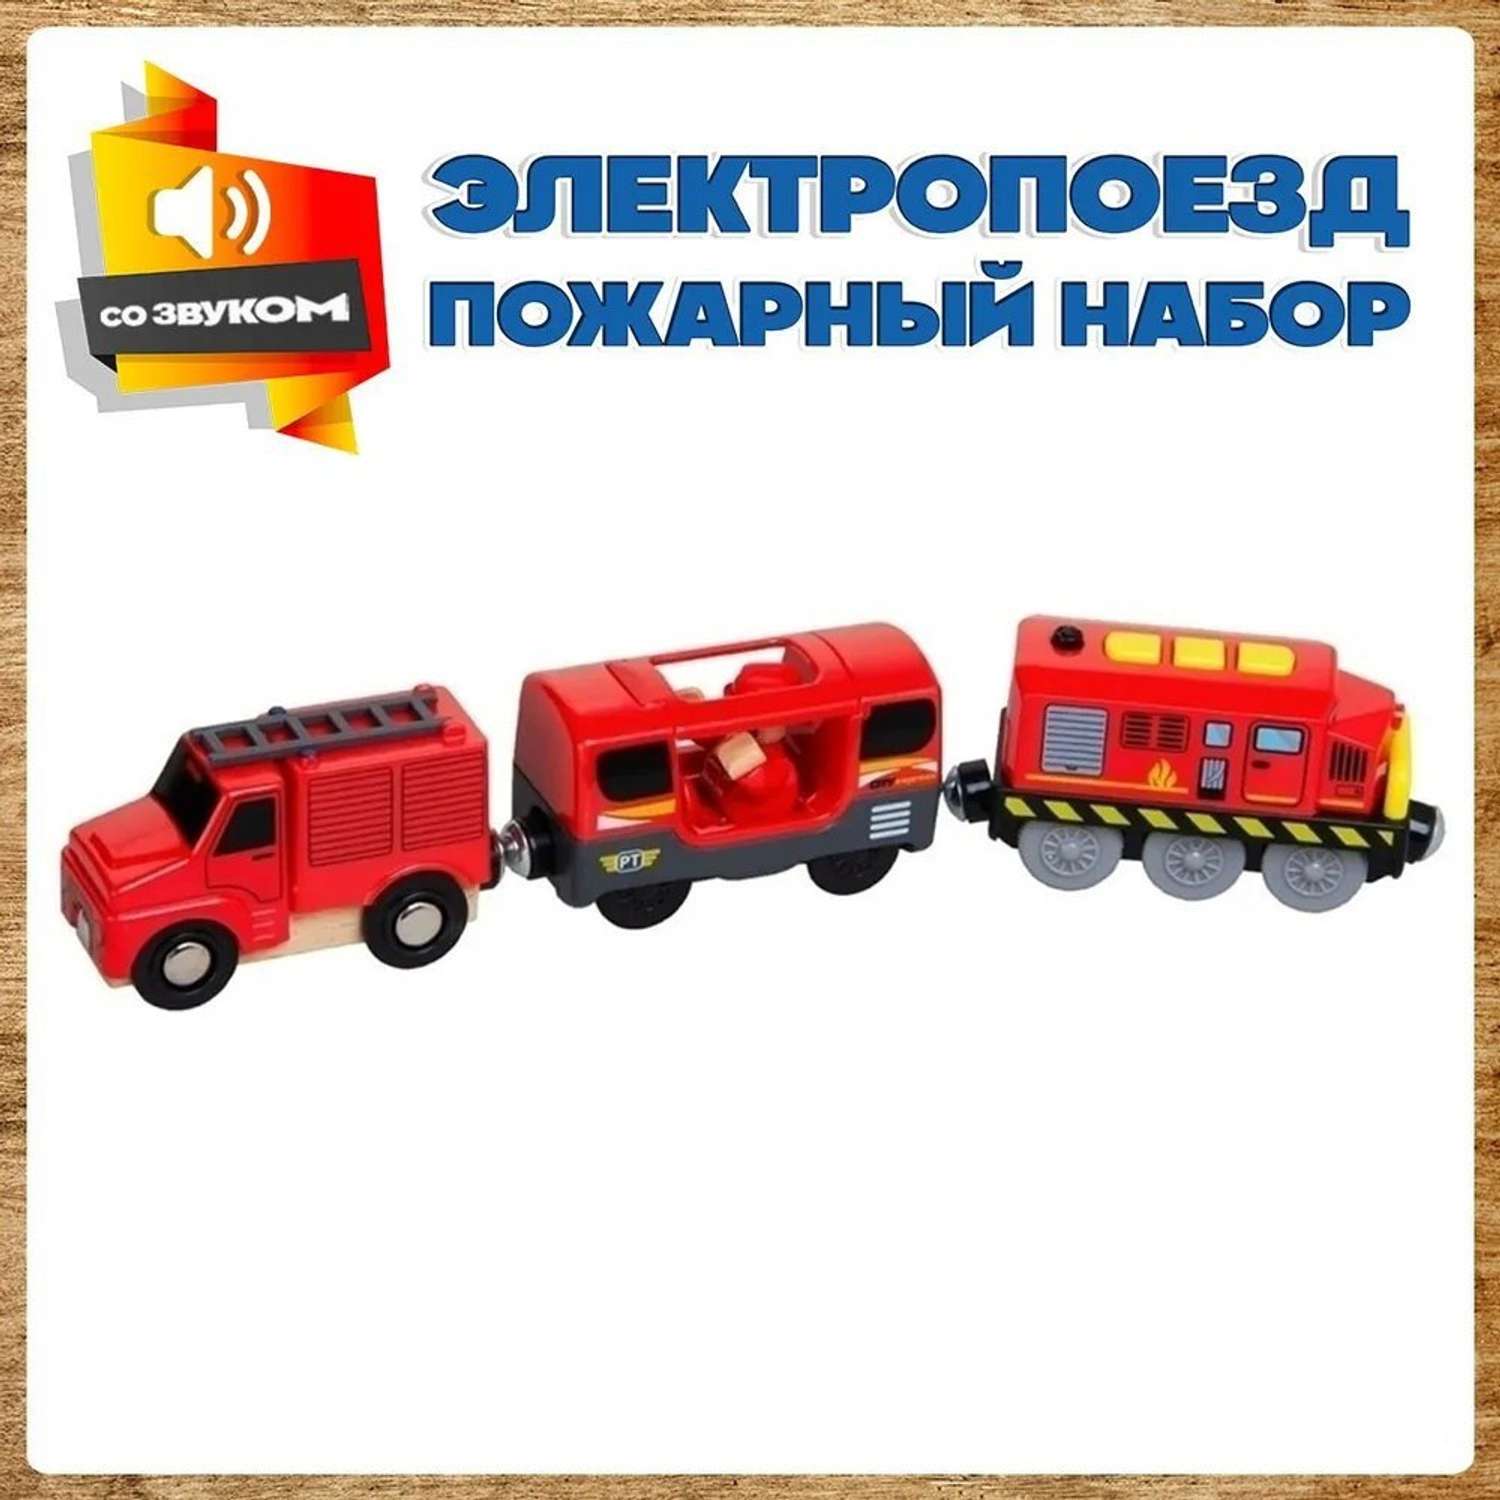 Электропоезд с вагонами А.Паровозиков для деревянной железной дороги Пожарный набор АП-001/ПЛ-0006 - фото 1